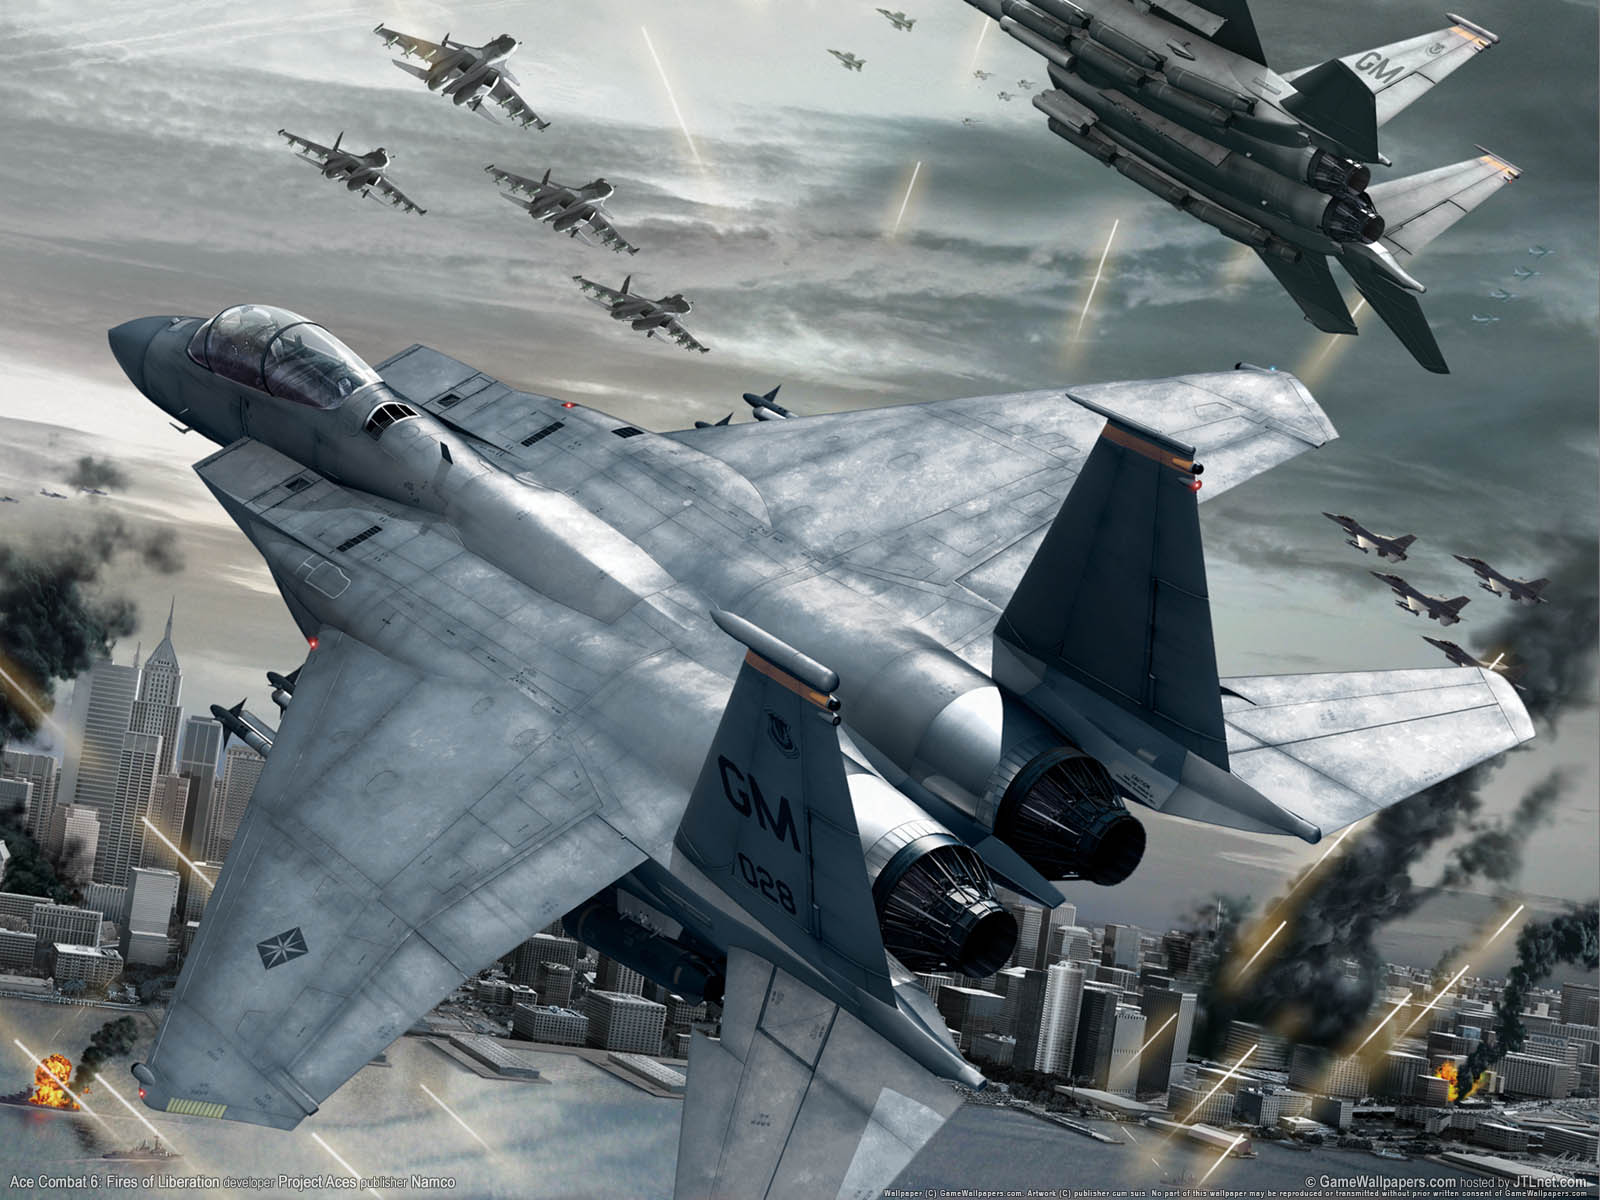 Ace Combat 6%3A Fires of Liberation fond d'cran 01 1600x1200